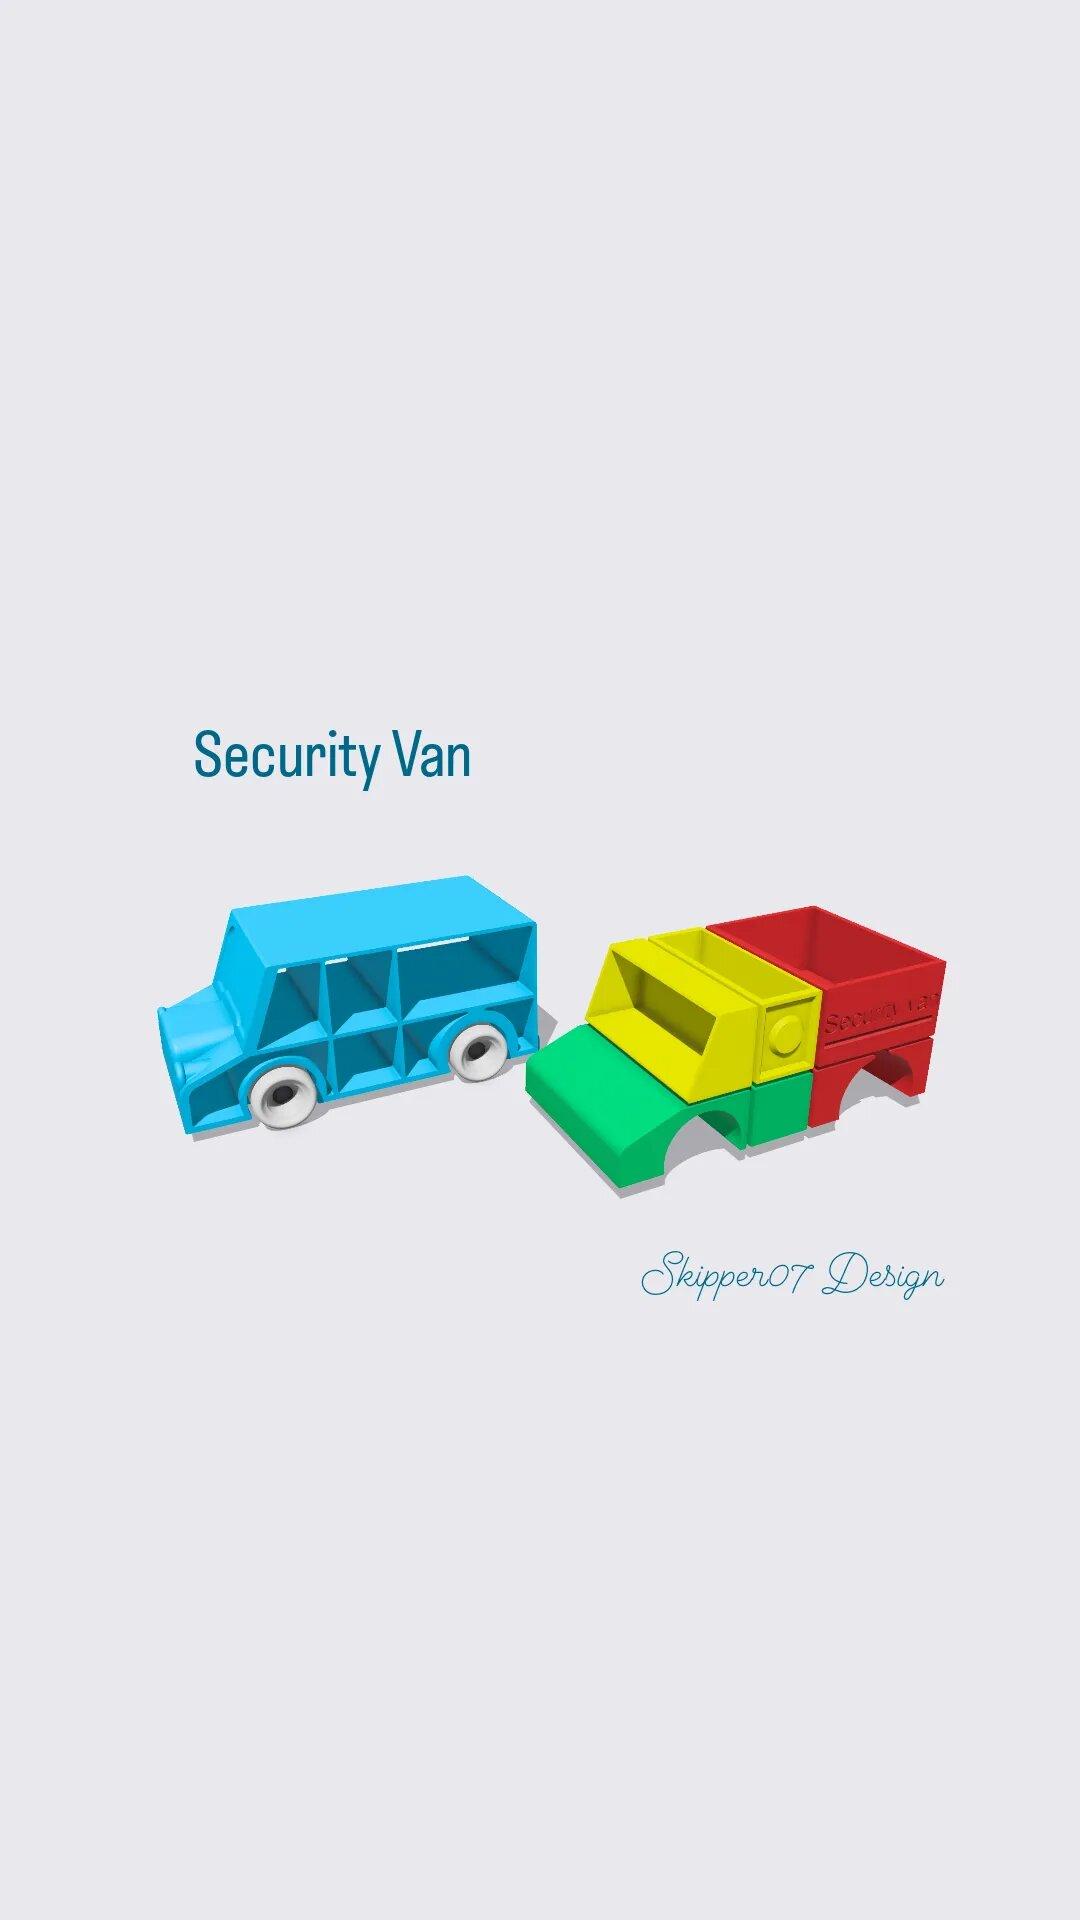 Security van 3d model